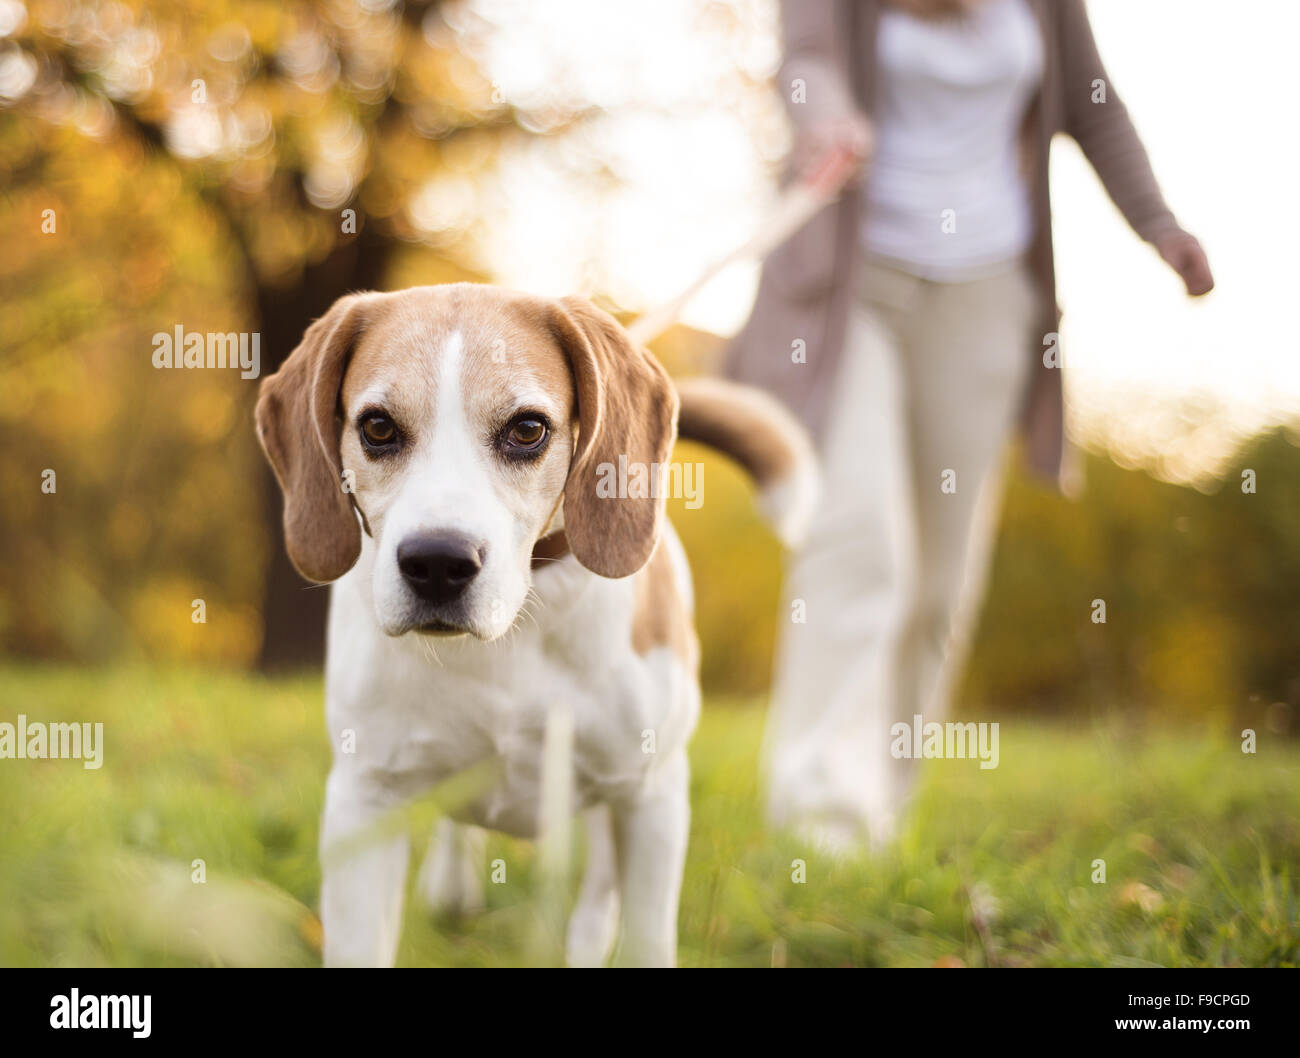 Senior woman promener son chien beagle en campagne Banque D'Images